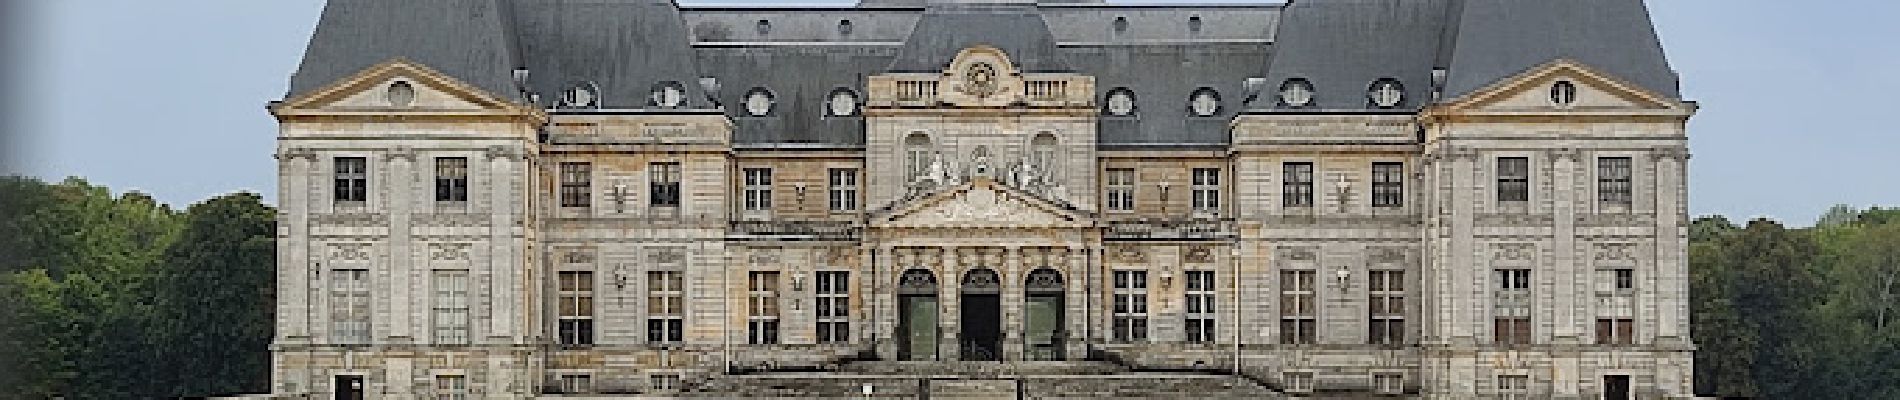 POI Maincy - Château de Vaux-le-Vicomte - Photo